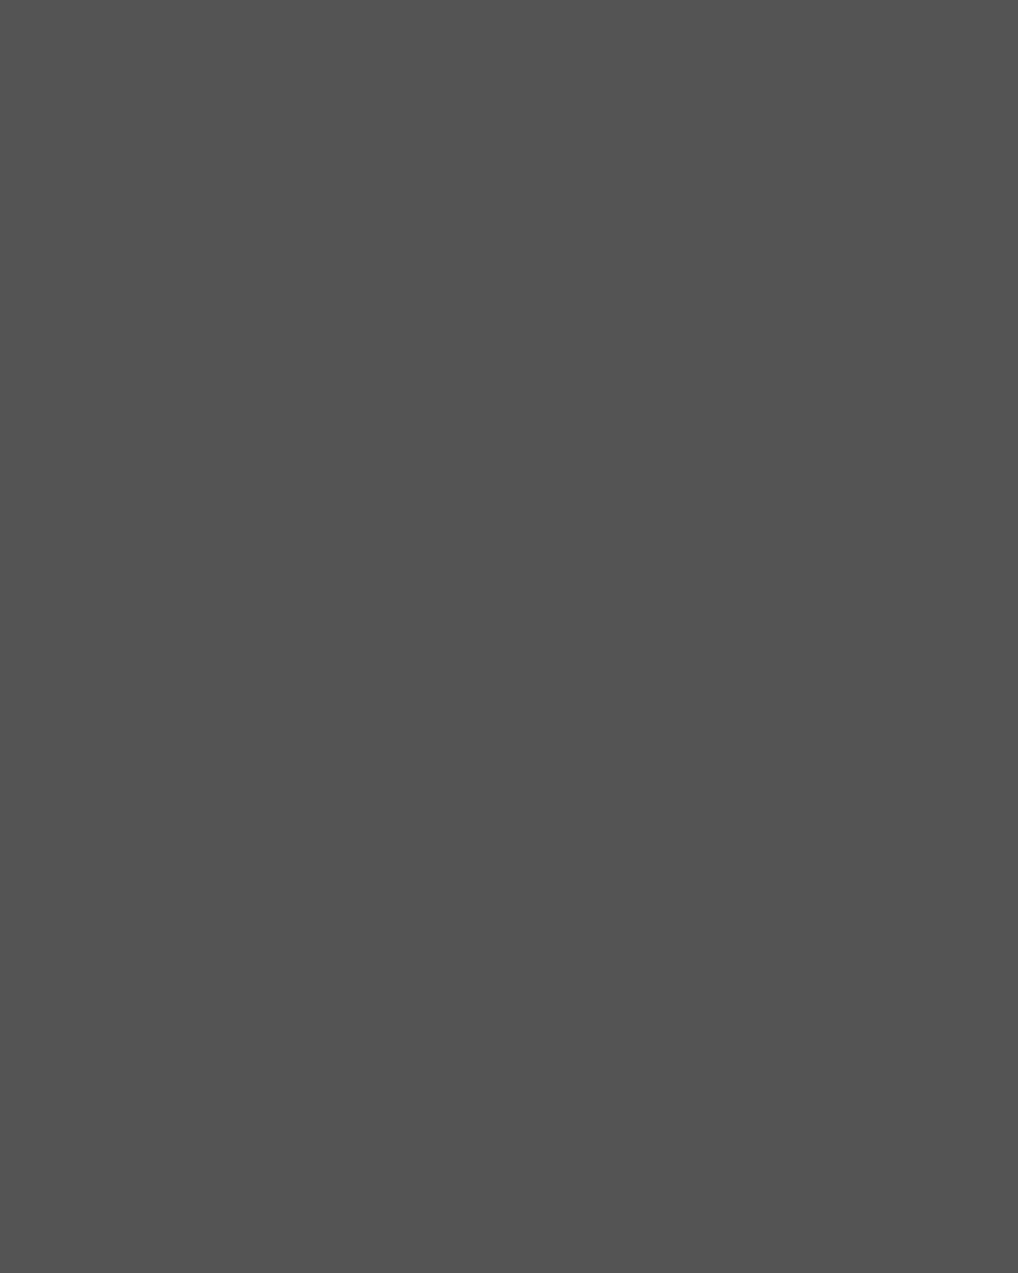 Александр Иванов. Портрет Николая Гоголя. 1841. Государственный Русский музей, Санкт-Петербург